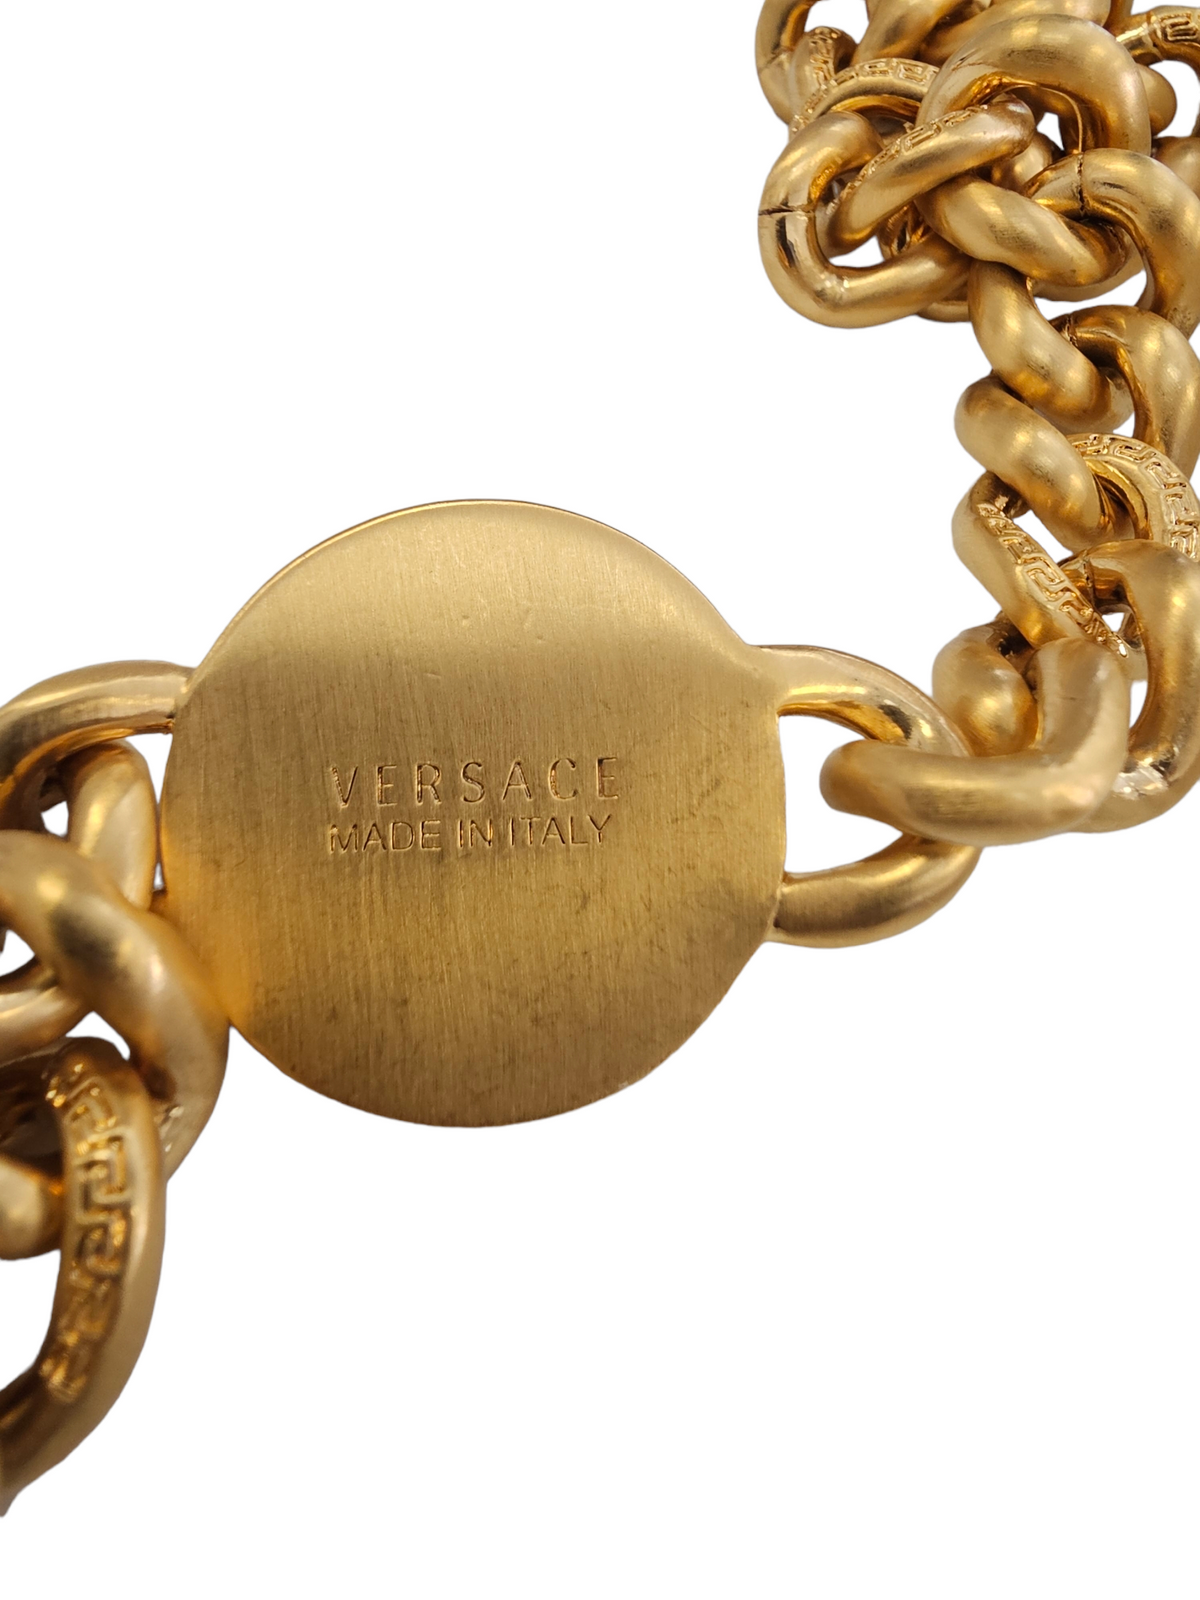 Versace Medusa Chain Necklace Authentic